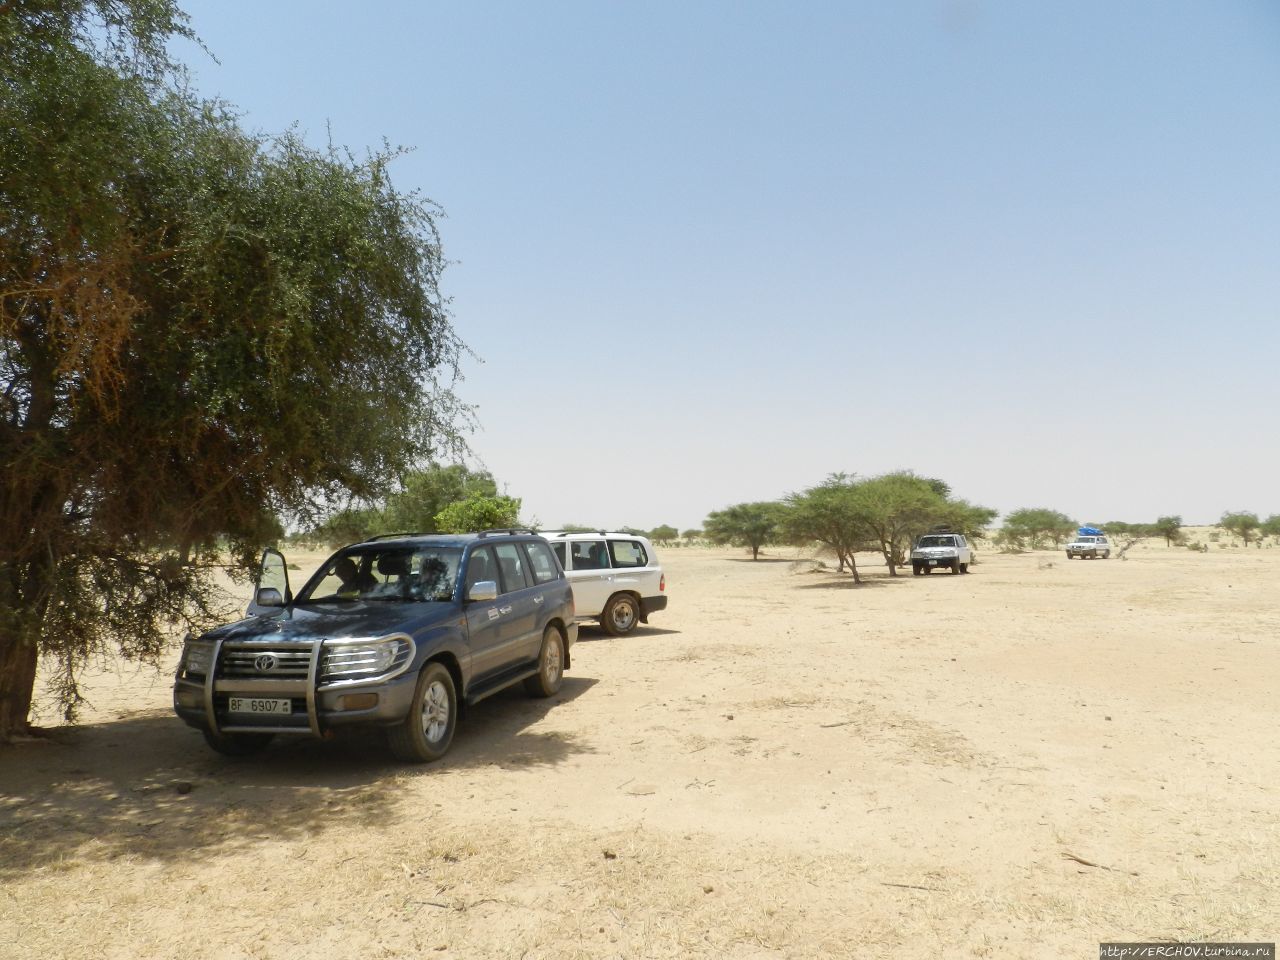 Нигер. Ч — 21. Долгая дорога из Агадеса в Зиндер Департамент Зиндер, Нигер